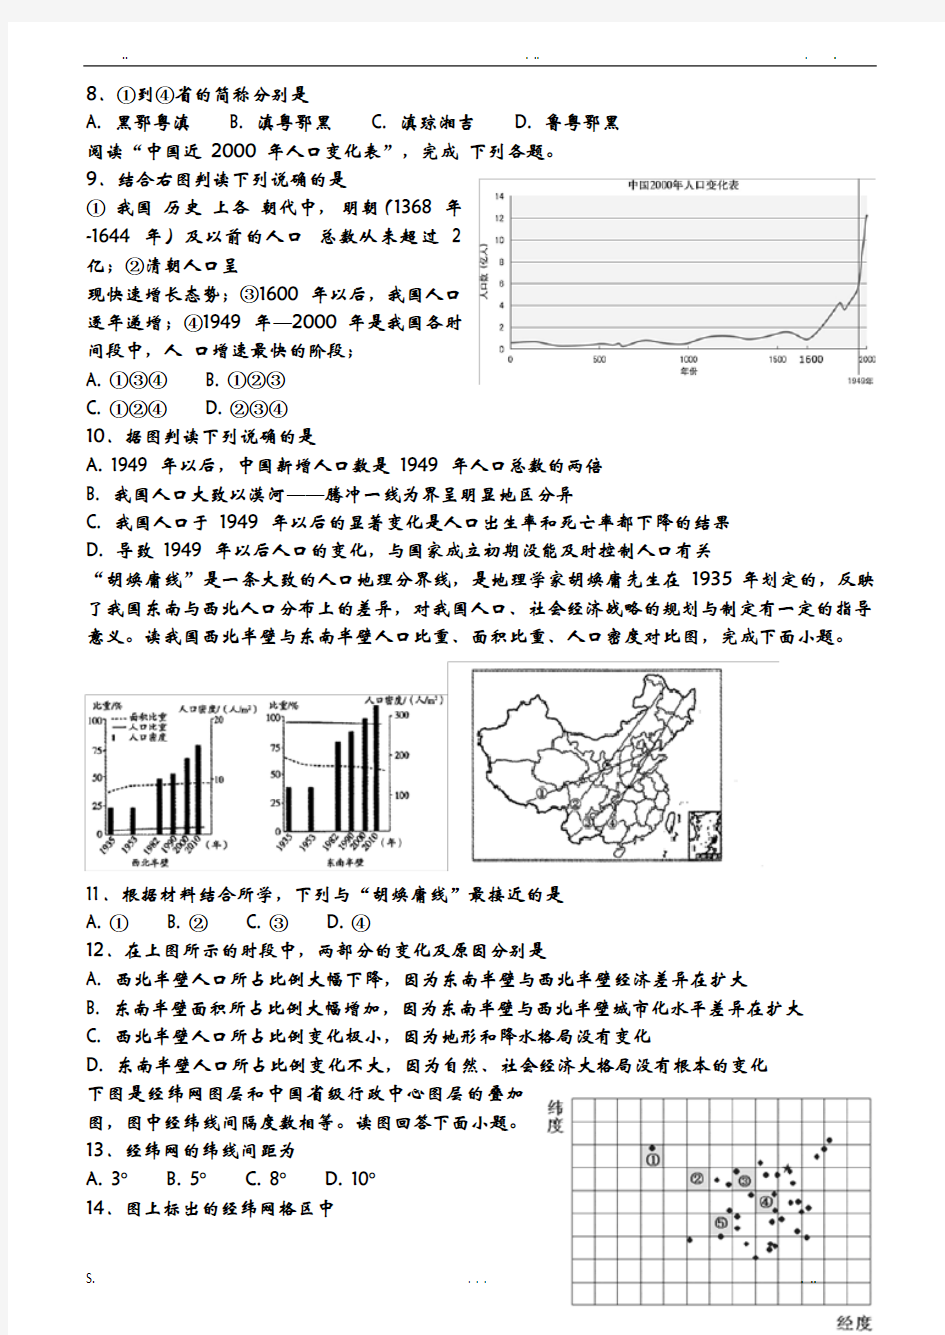 高二区域地理中国地理概况测试题